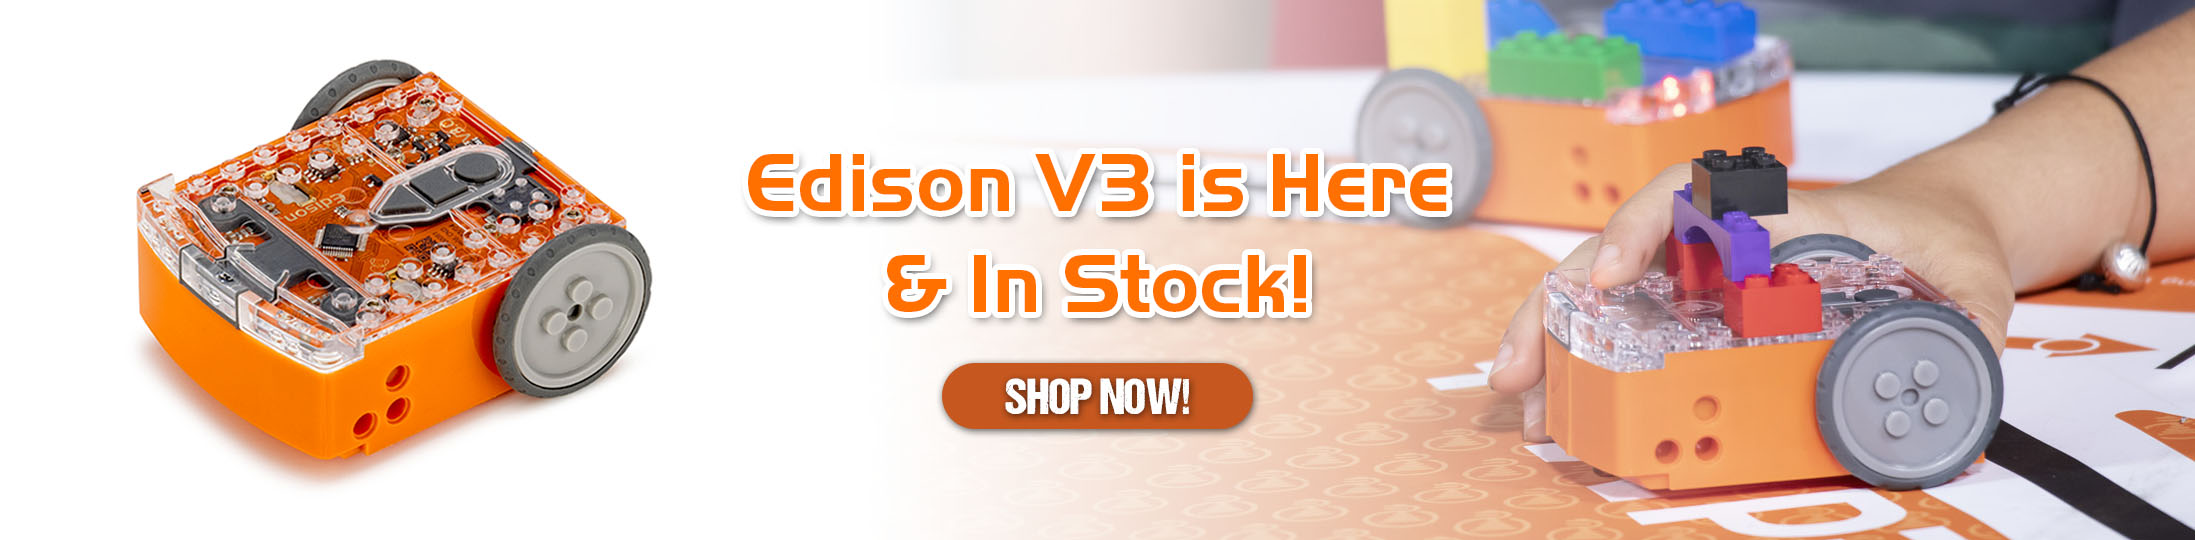 Edison V3 Banner